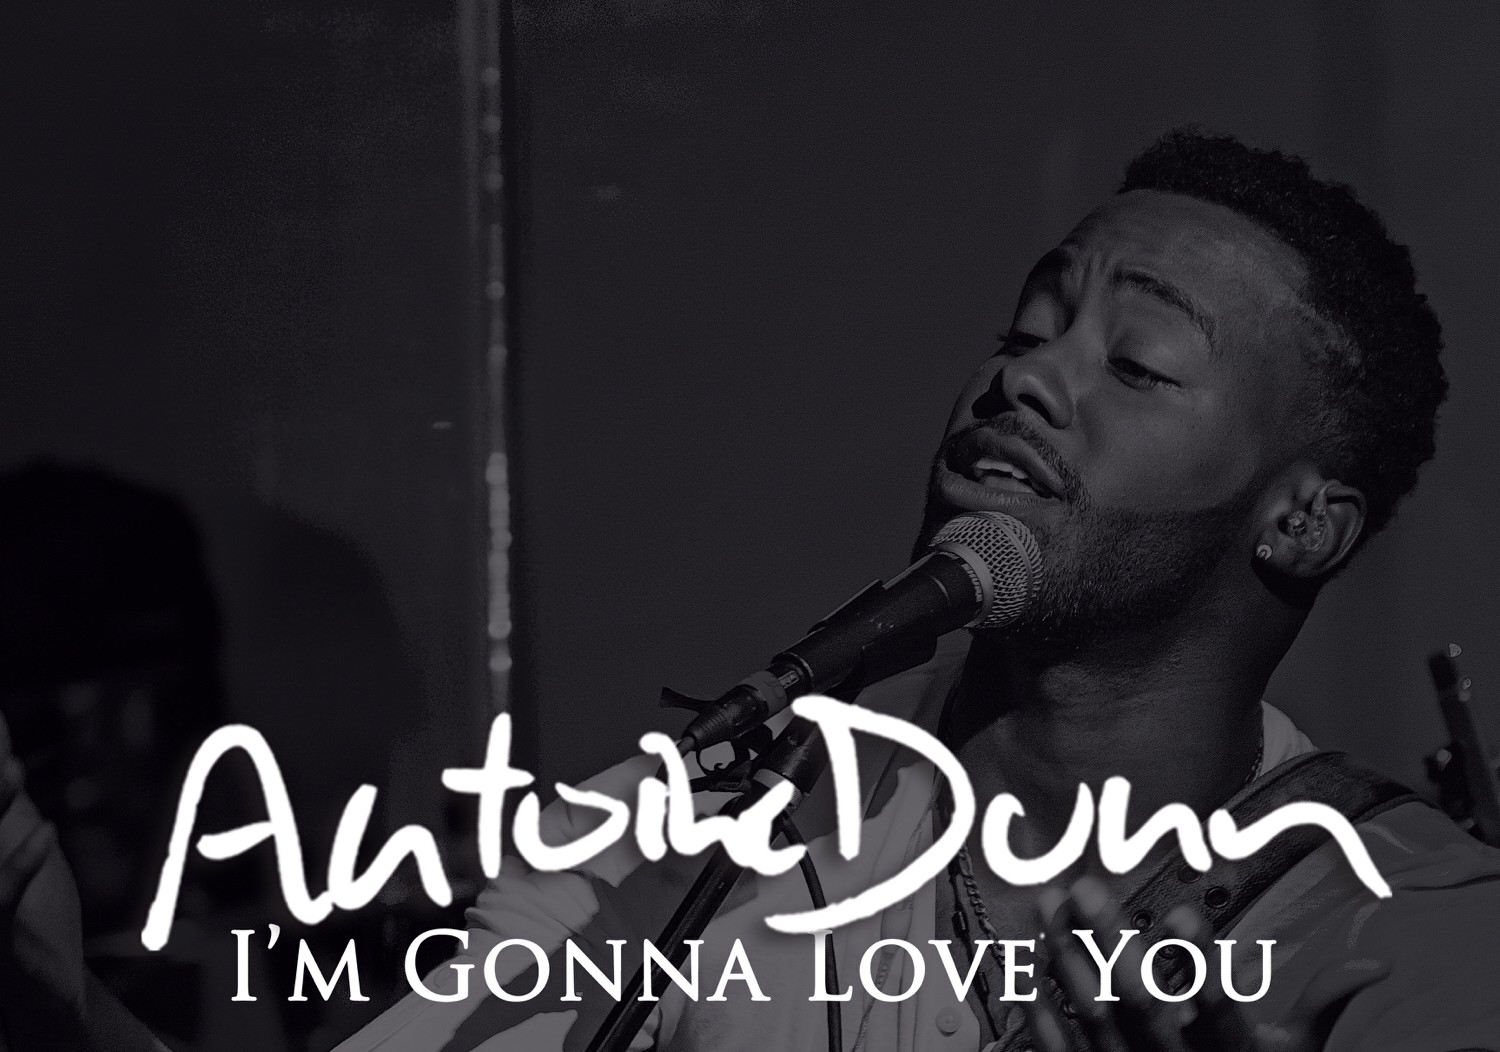 New Video: Antoine Dunn "I'm Gonna Love You"